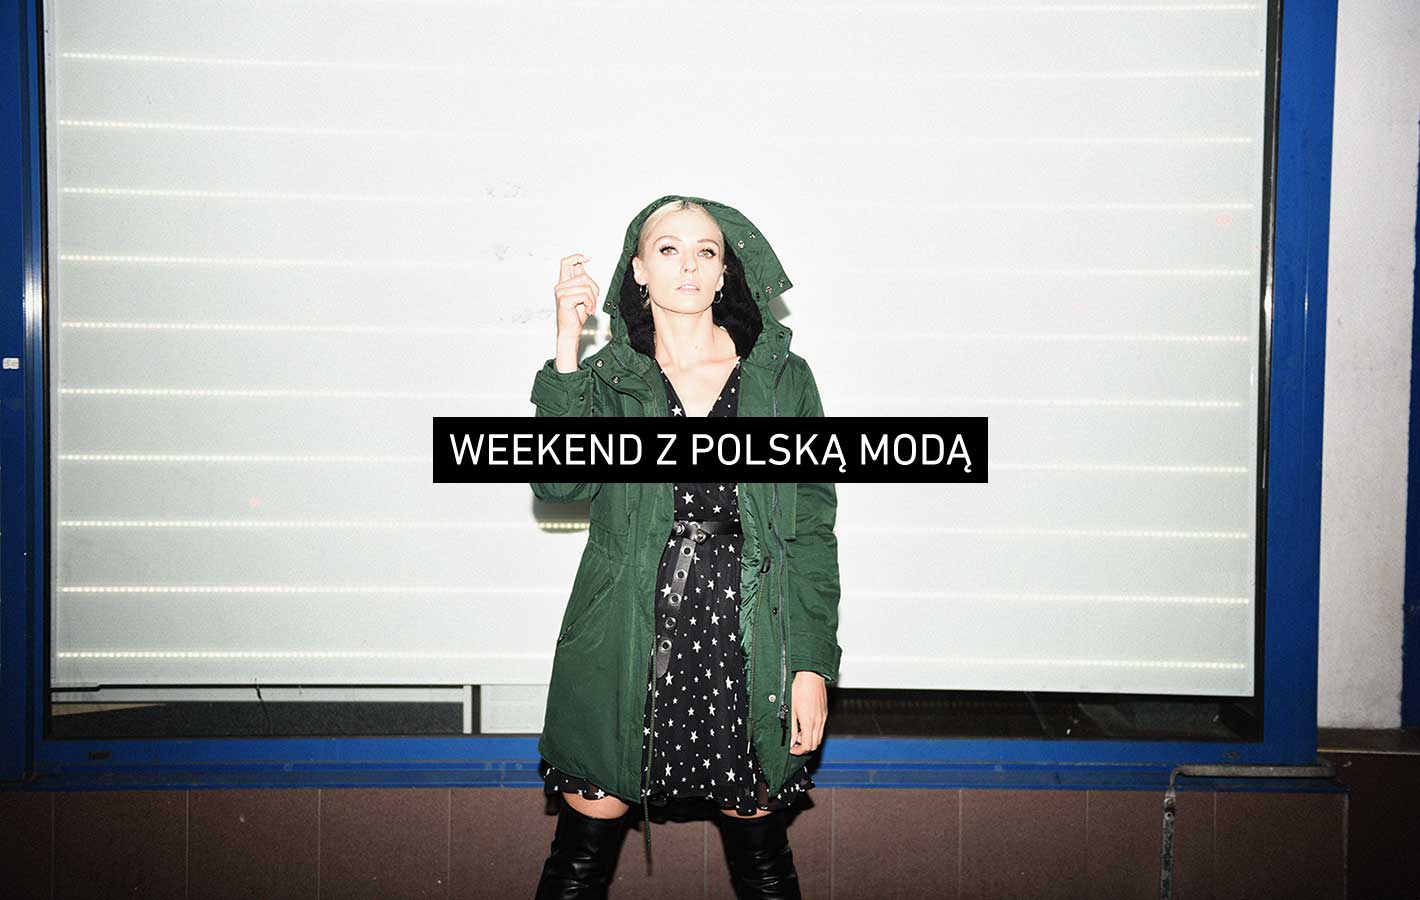 Weekend z polską modą: Magda Samborska (Rebel Look) zdradza nam swoje ulubione trendy na jesień 2016